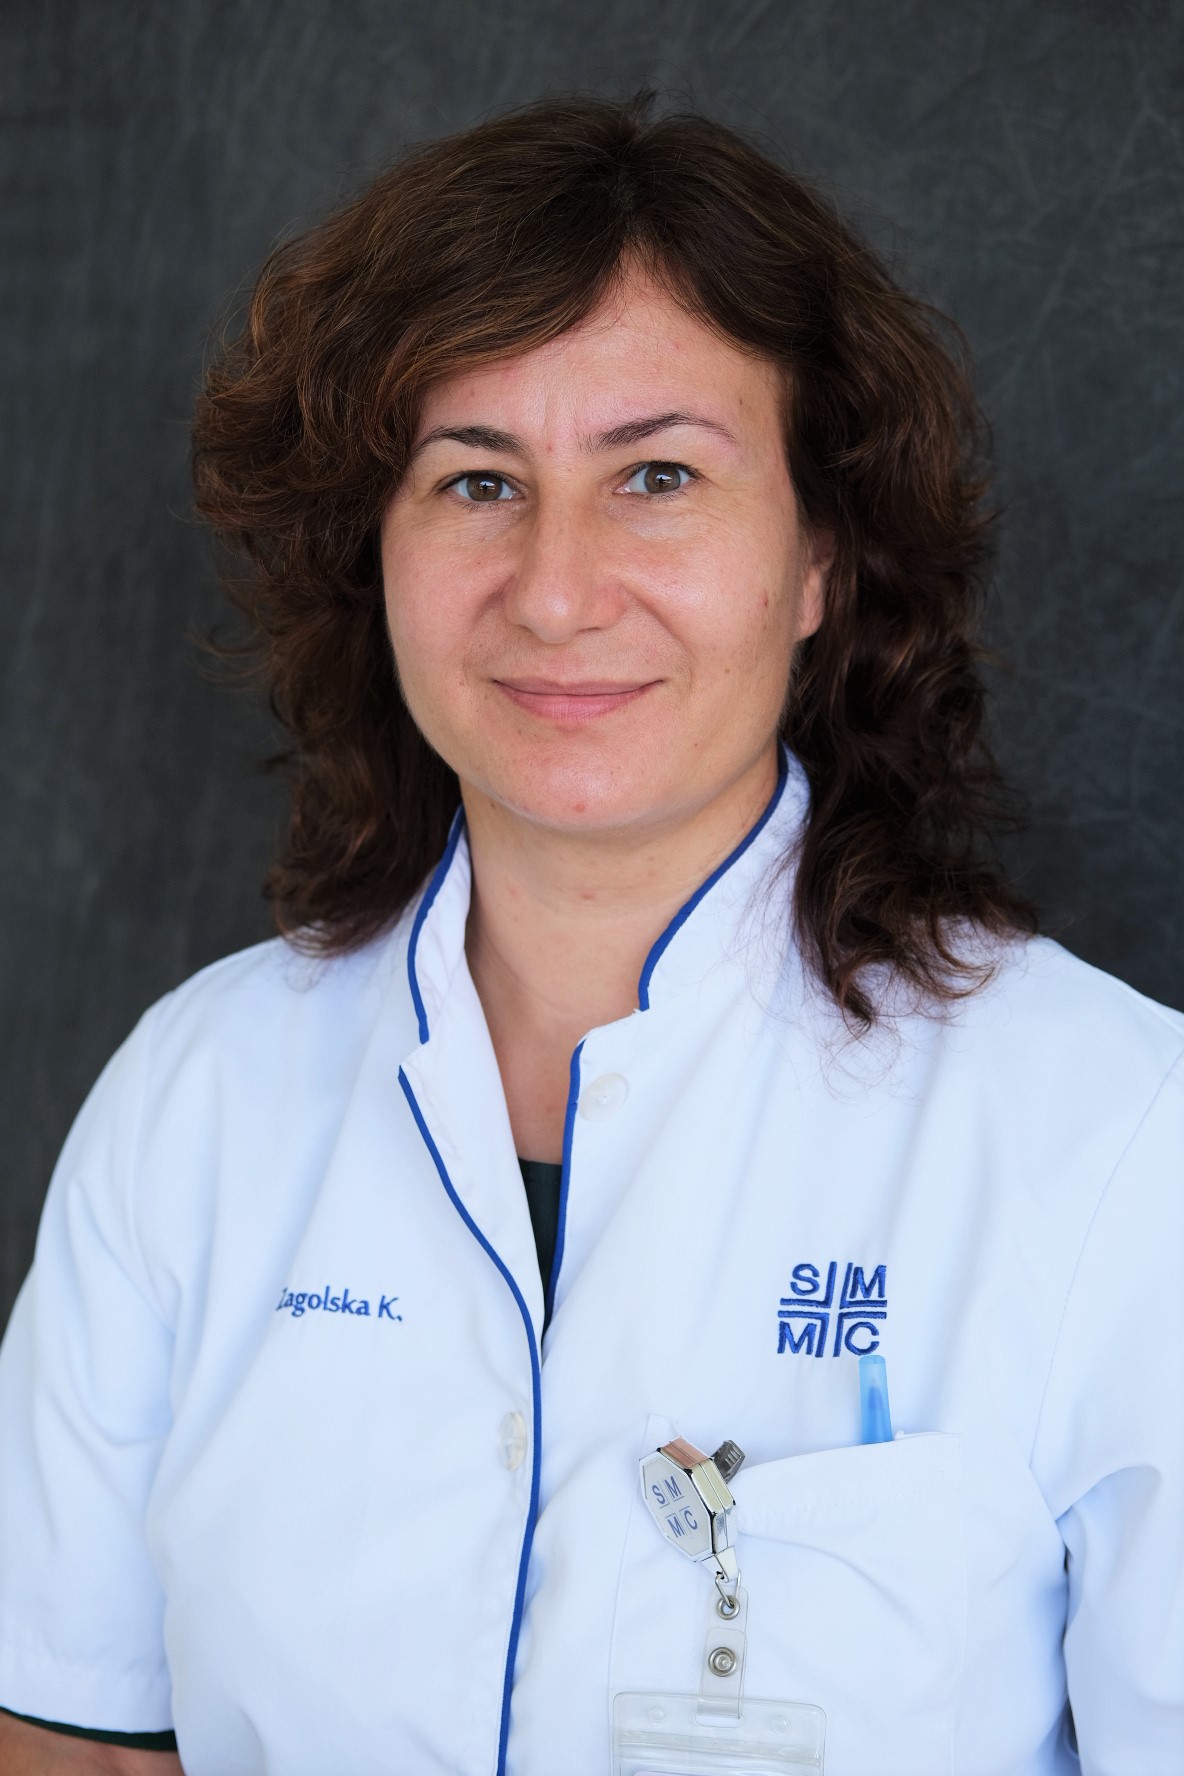 Dr. Katarzyna Zagolska - Anesthesiologist